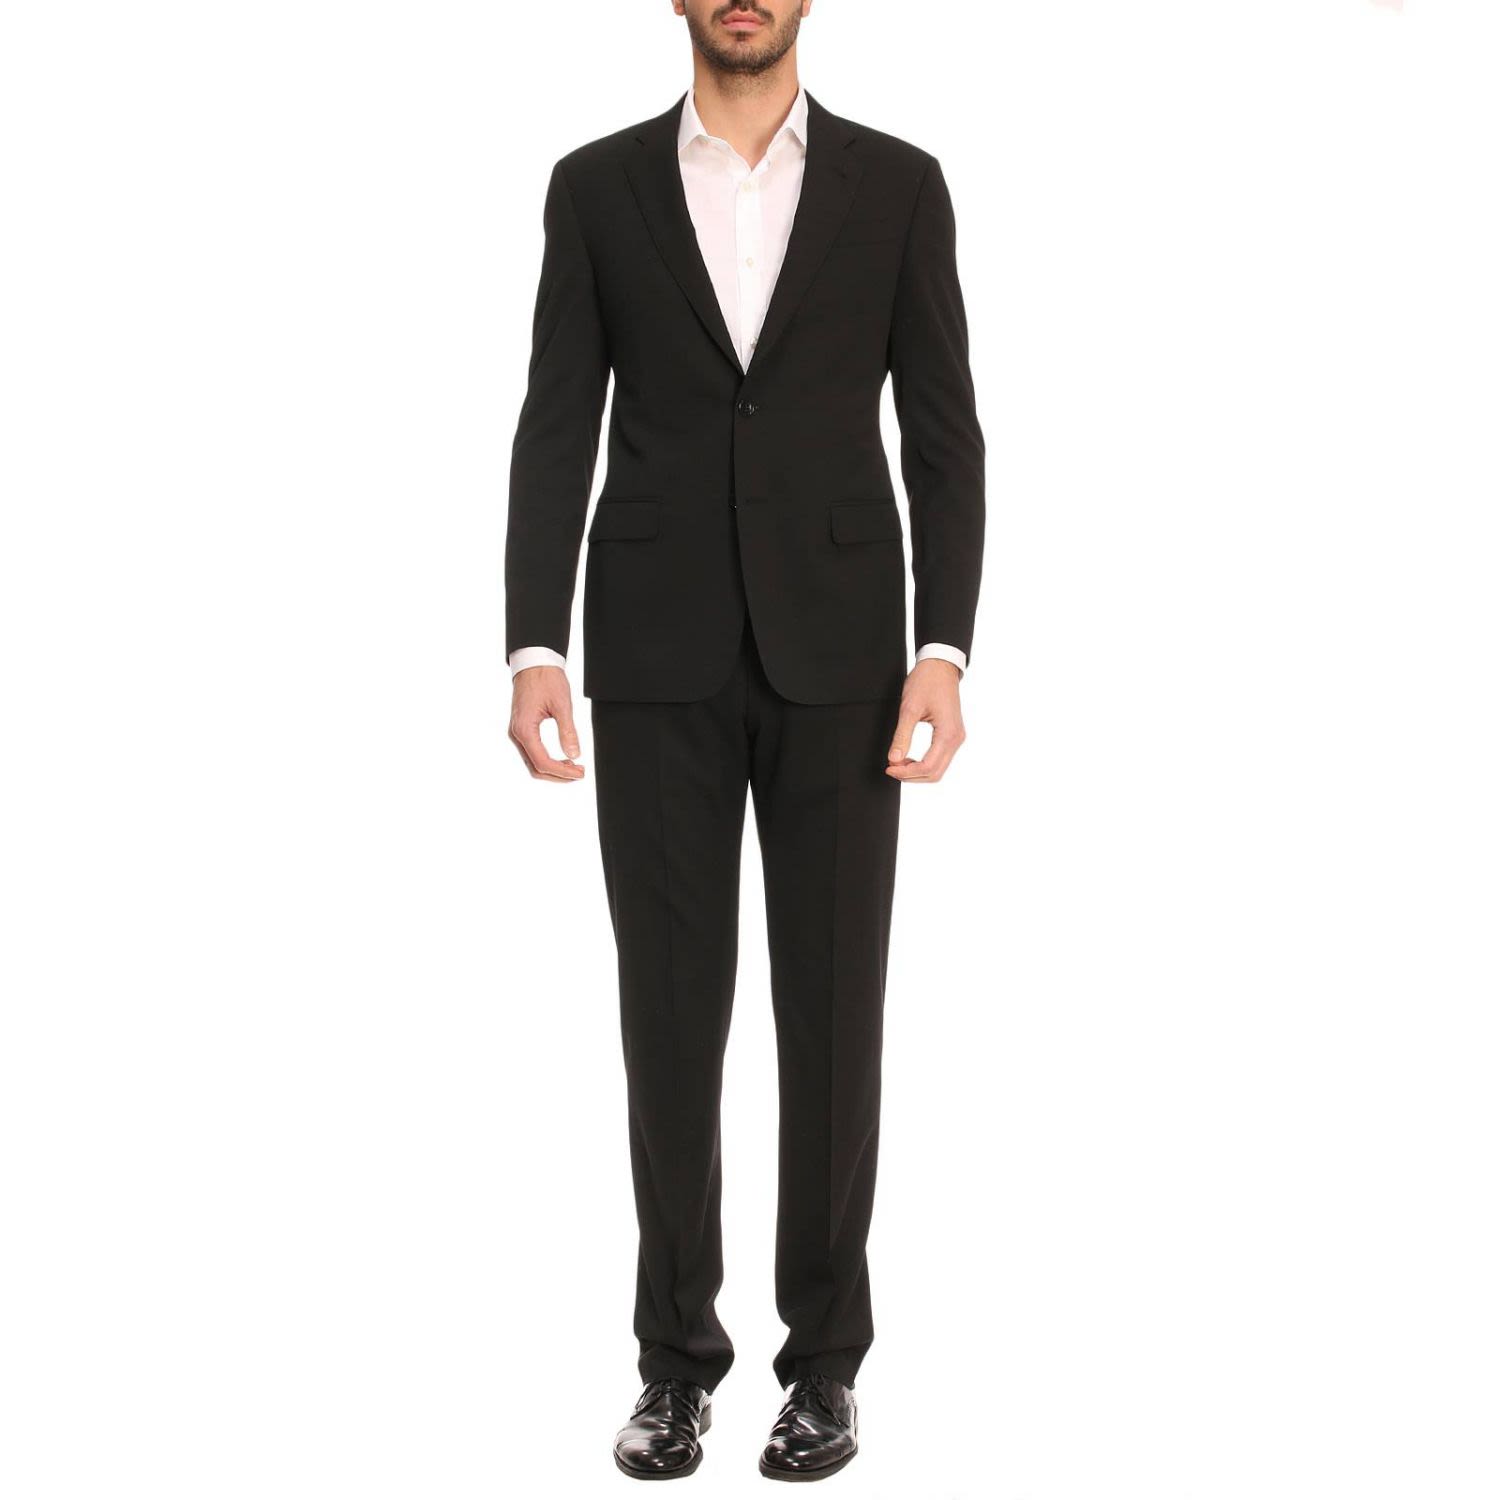 Giorgio Armani - Suit Suit Men Giorgio Armani - black, Men's Suits ...